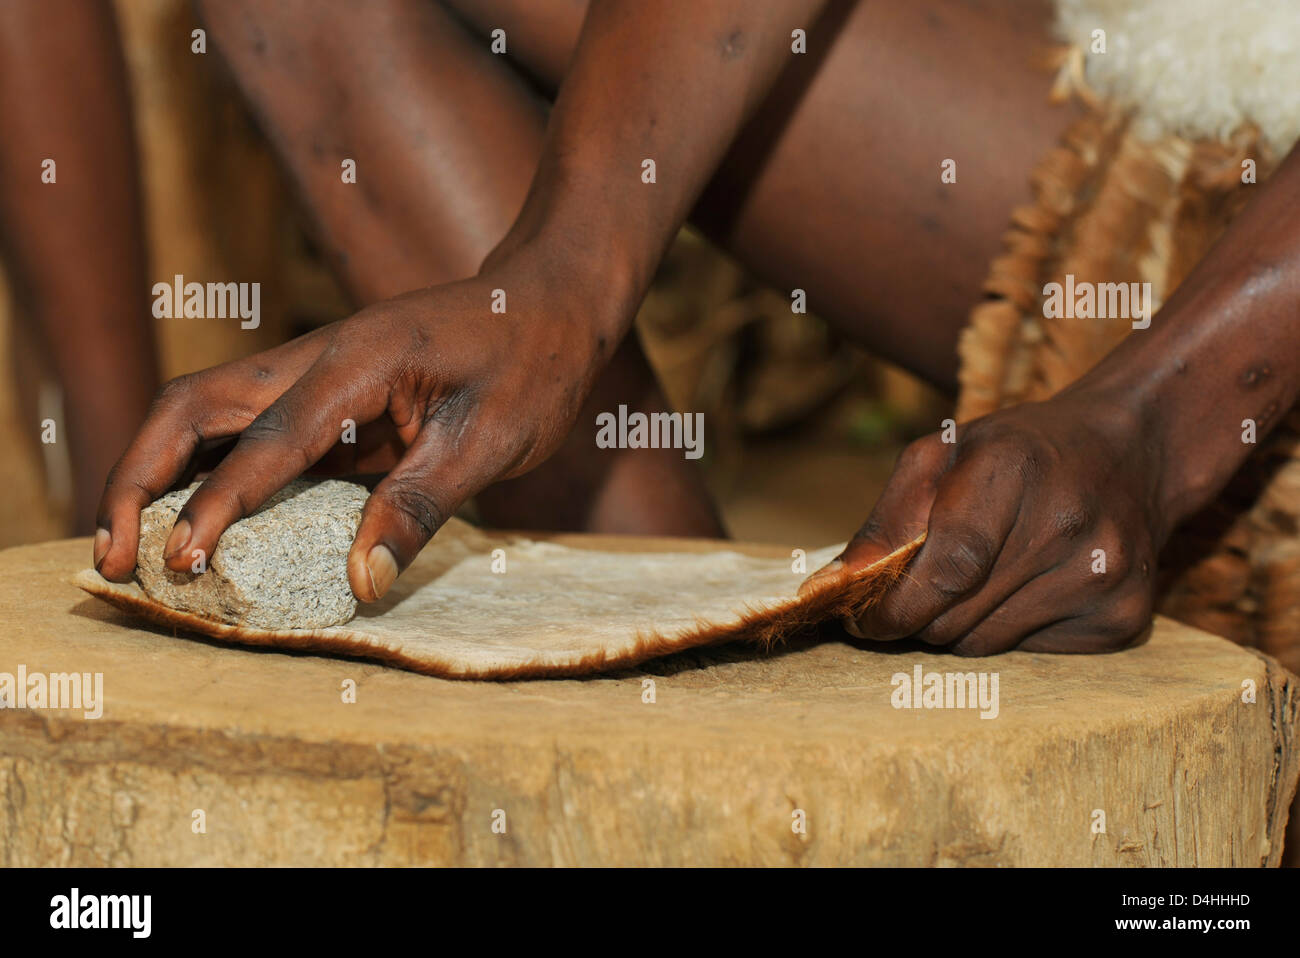 Eshowe, KwaZulu-Natal, Afrique du Sud, les mains, le tannage du cuir homme zoulou avec pierre, de faire la démonstration d'artisanat zoulou traditionnel de marchandises, Shakaland Banque D'Images